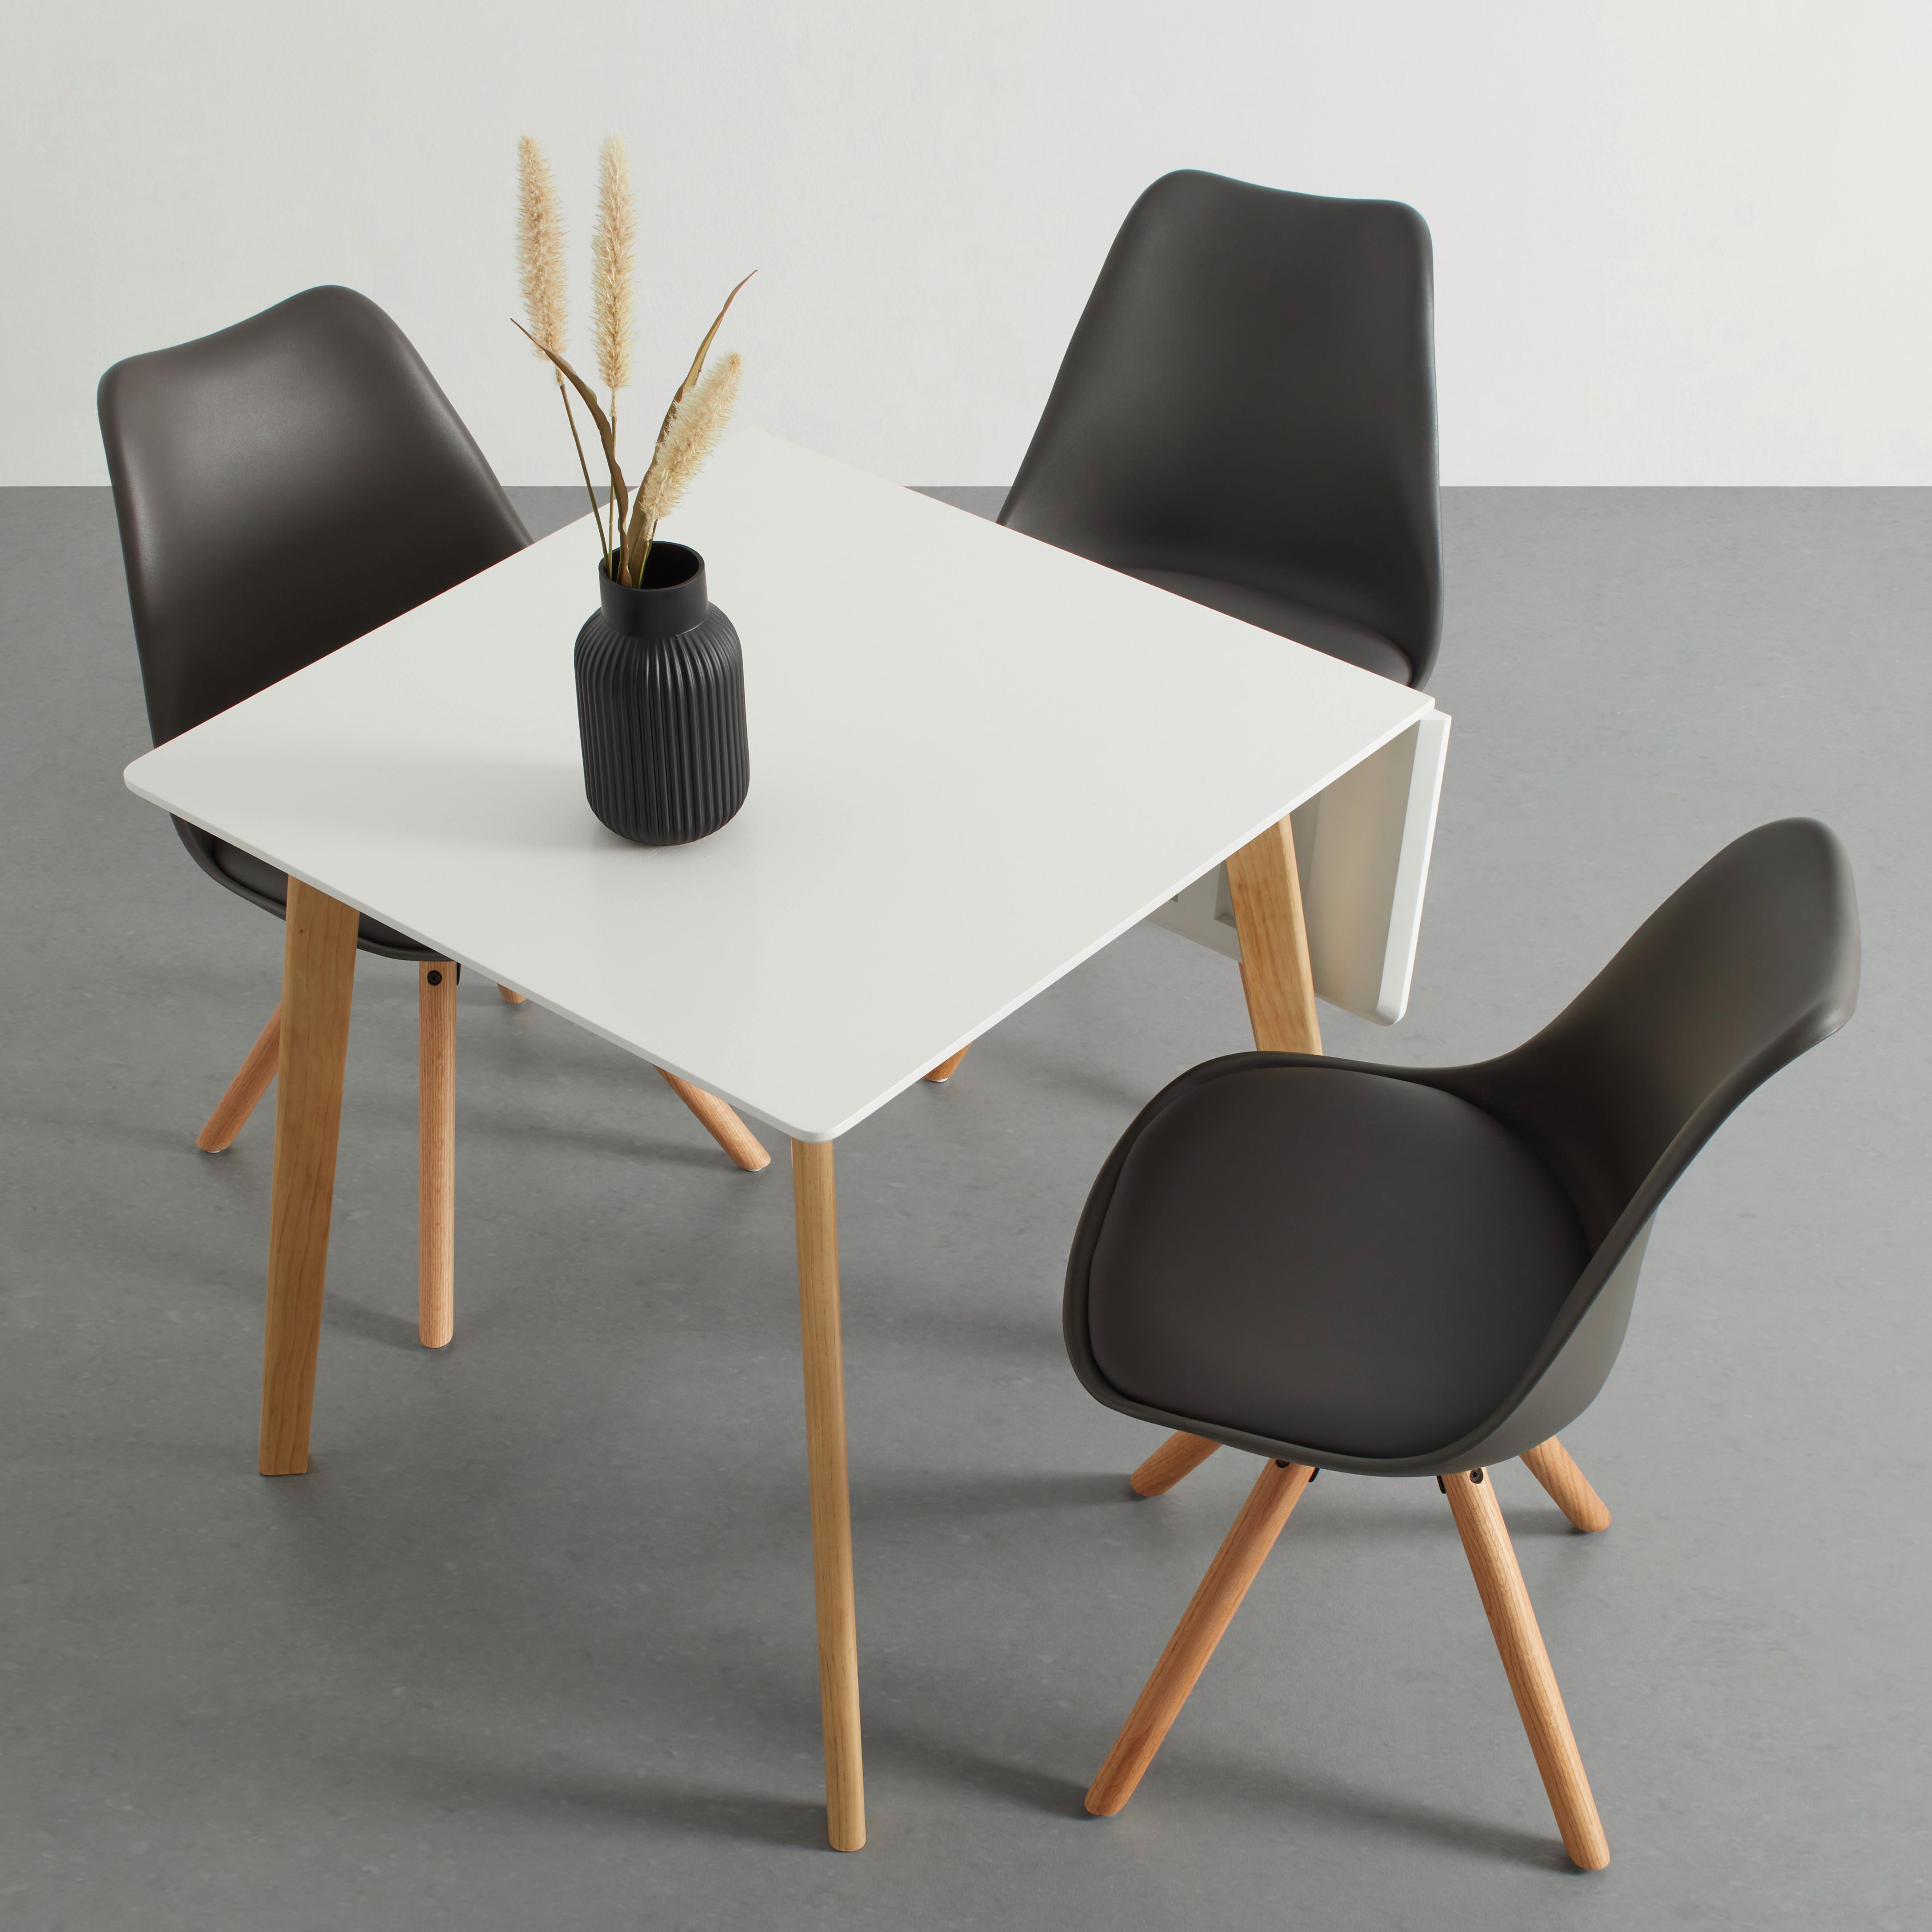 Étkezőasztal Lund - Natúr/Fehér, modern, Faalapú anyag/Fém (75/75-105/75cm) - Modern Living